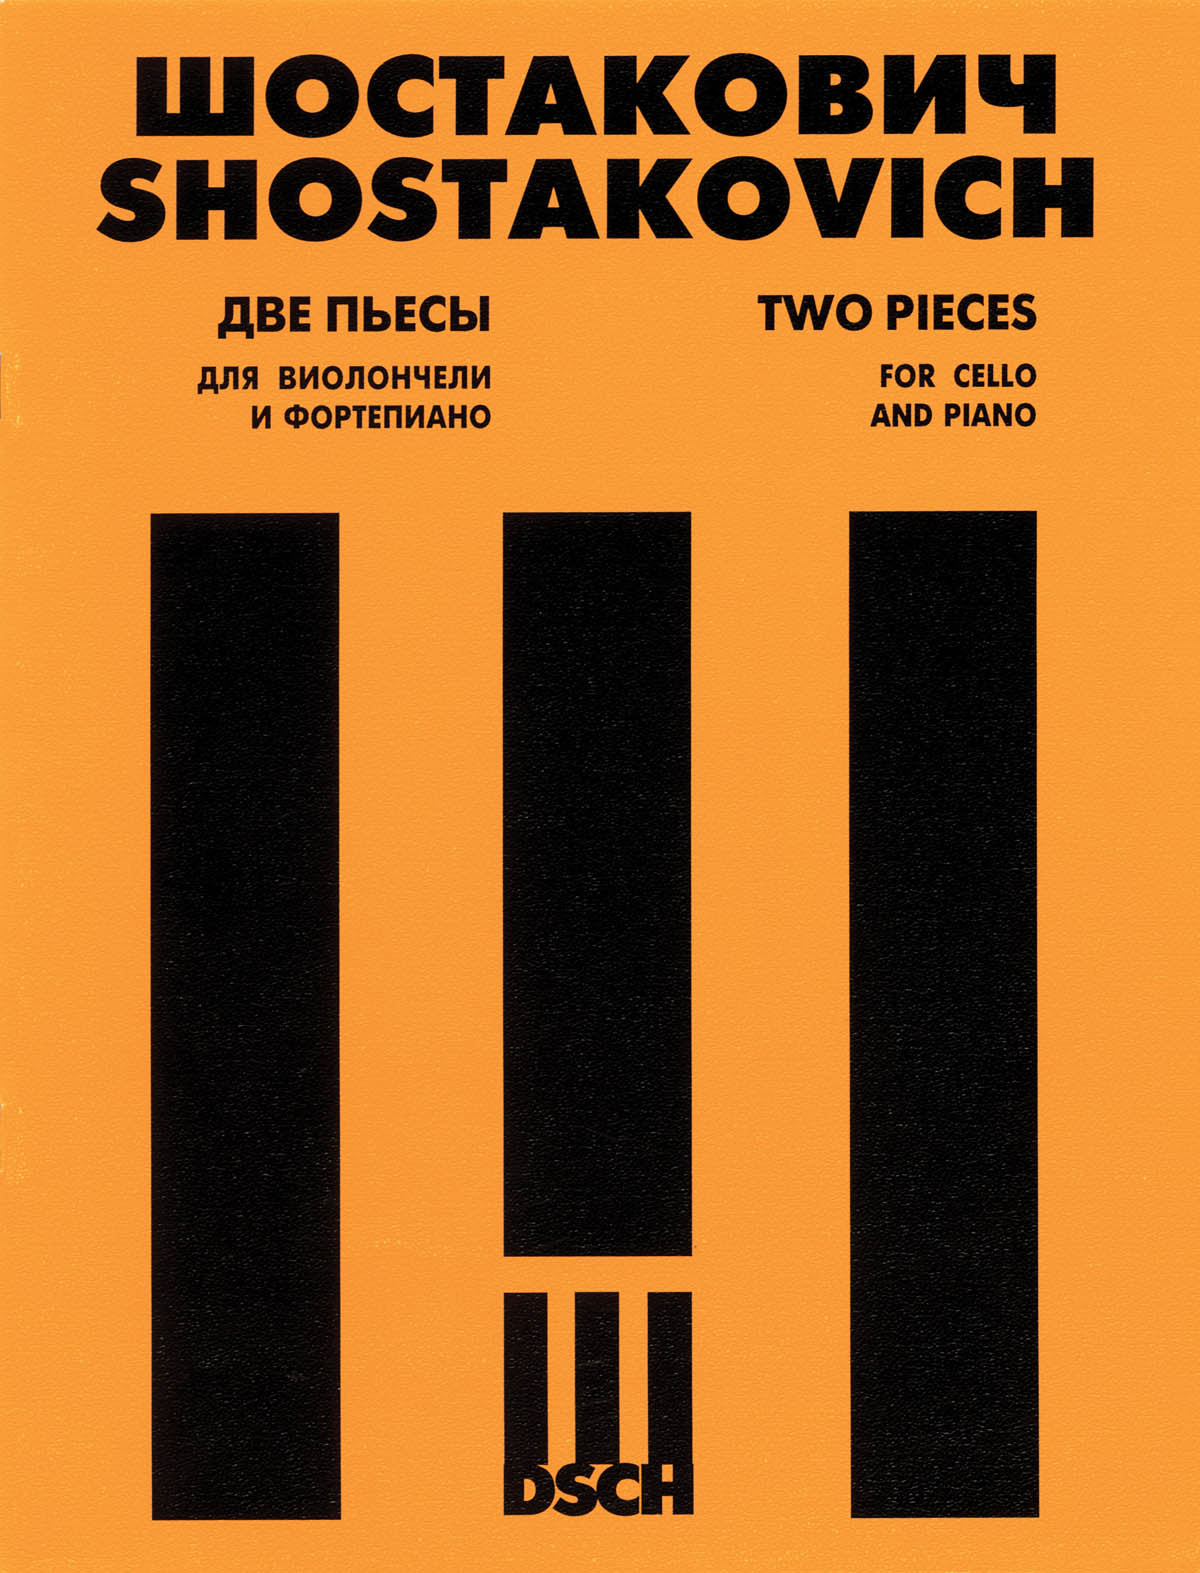 Shostakovich: Cello Sonata in D minor, Op. 40 